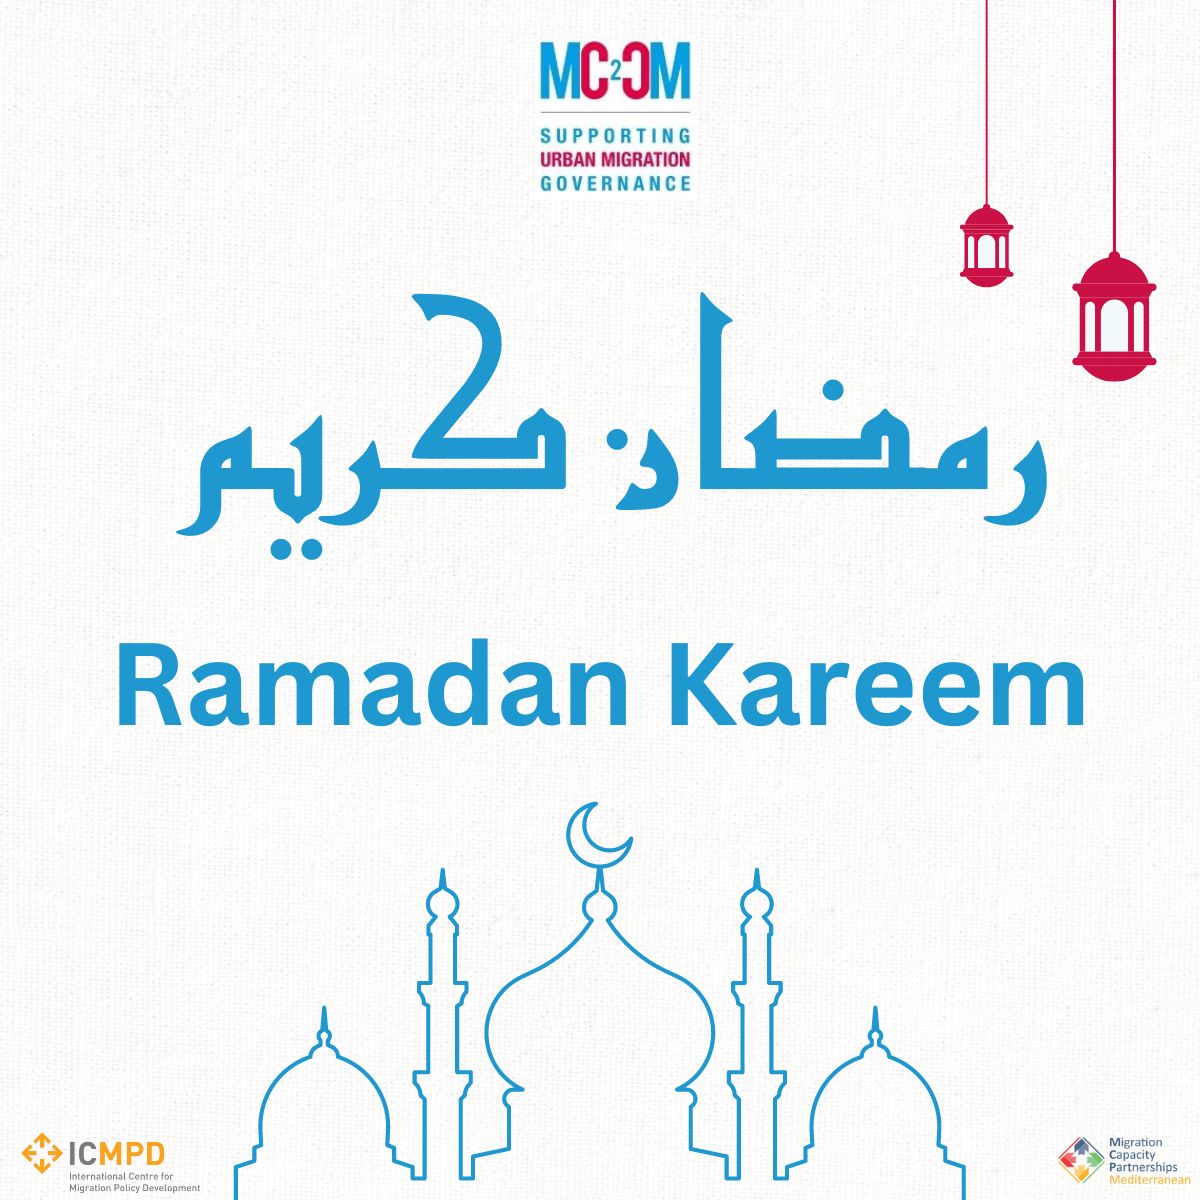 🌍 MC2CM wishes a Ramadan Kareem to all our followers and counterparts observing this special month. مشروع الهجرة بين المدن المتوسطية يتمنى رمضان كريم لجميع متابعينا وزملائنا الذين يحتفلون بهذا الشهر المبارك. نتمنى أن يكون هذا الشهر مليئًا بالسلام والبركات لكم ولأحبائكم